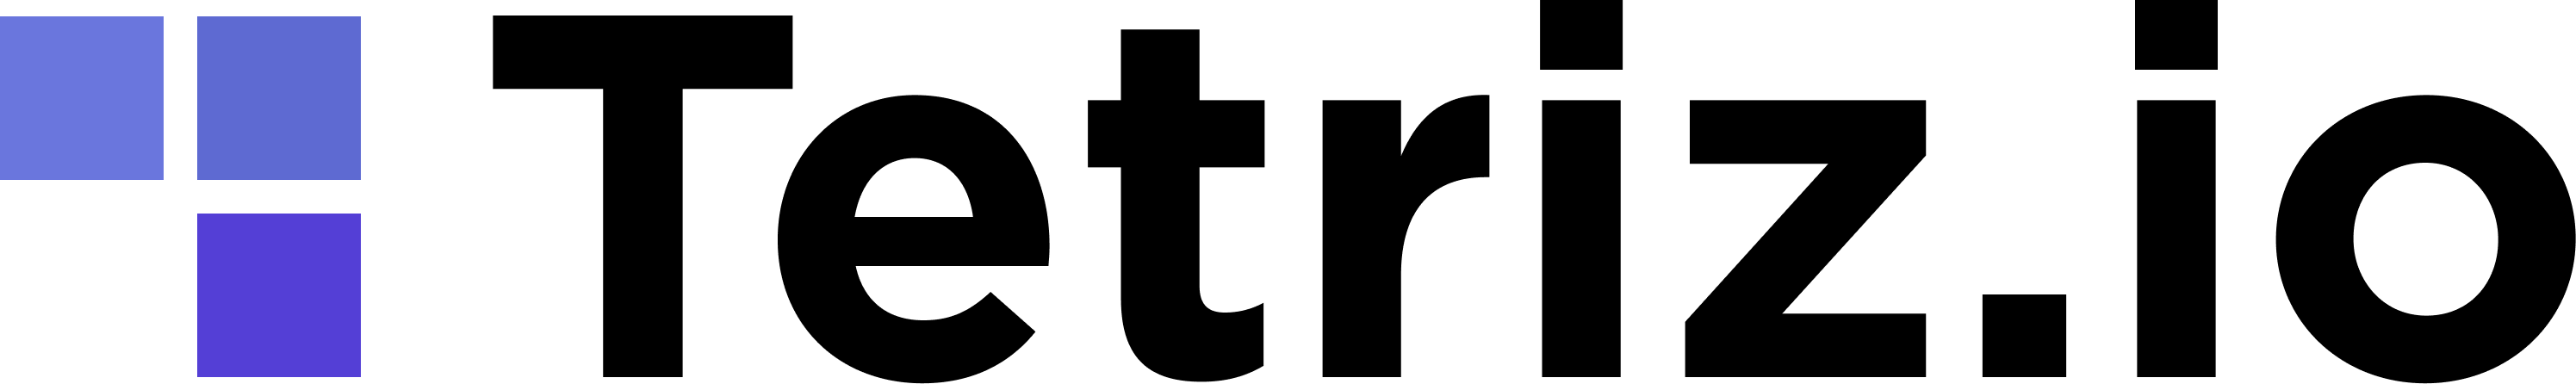 Tetriz logo